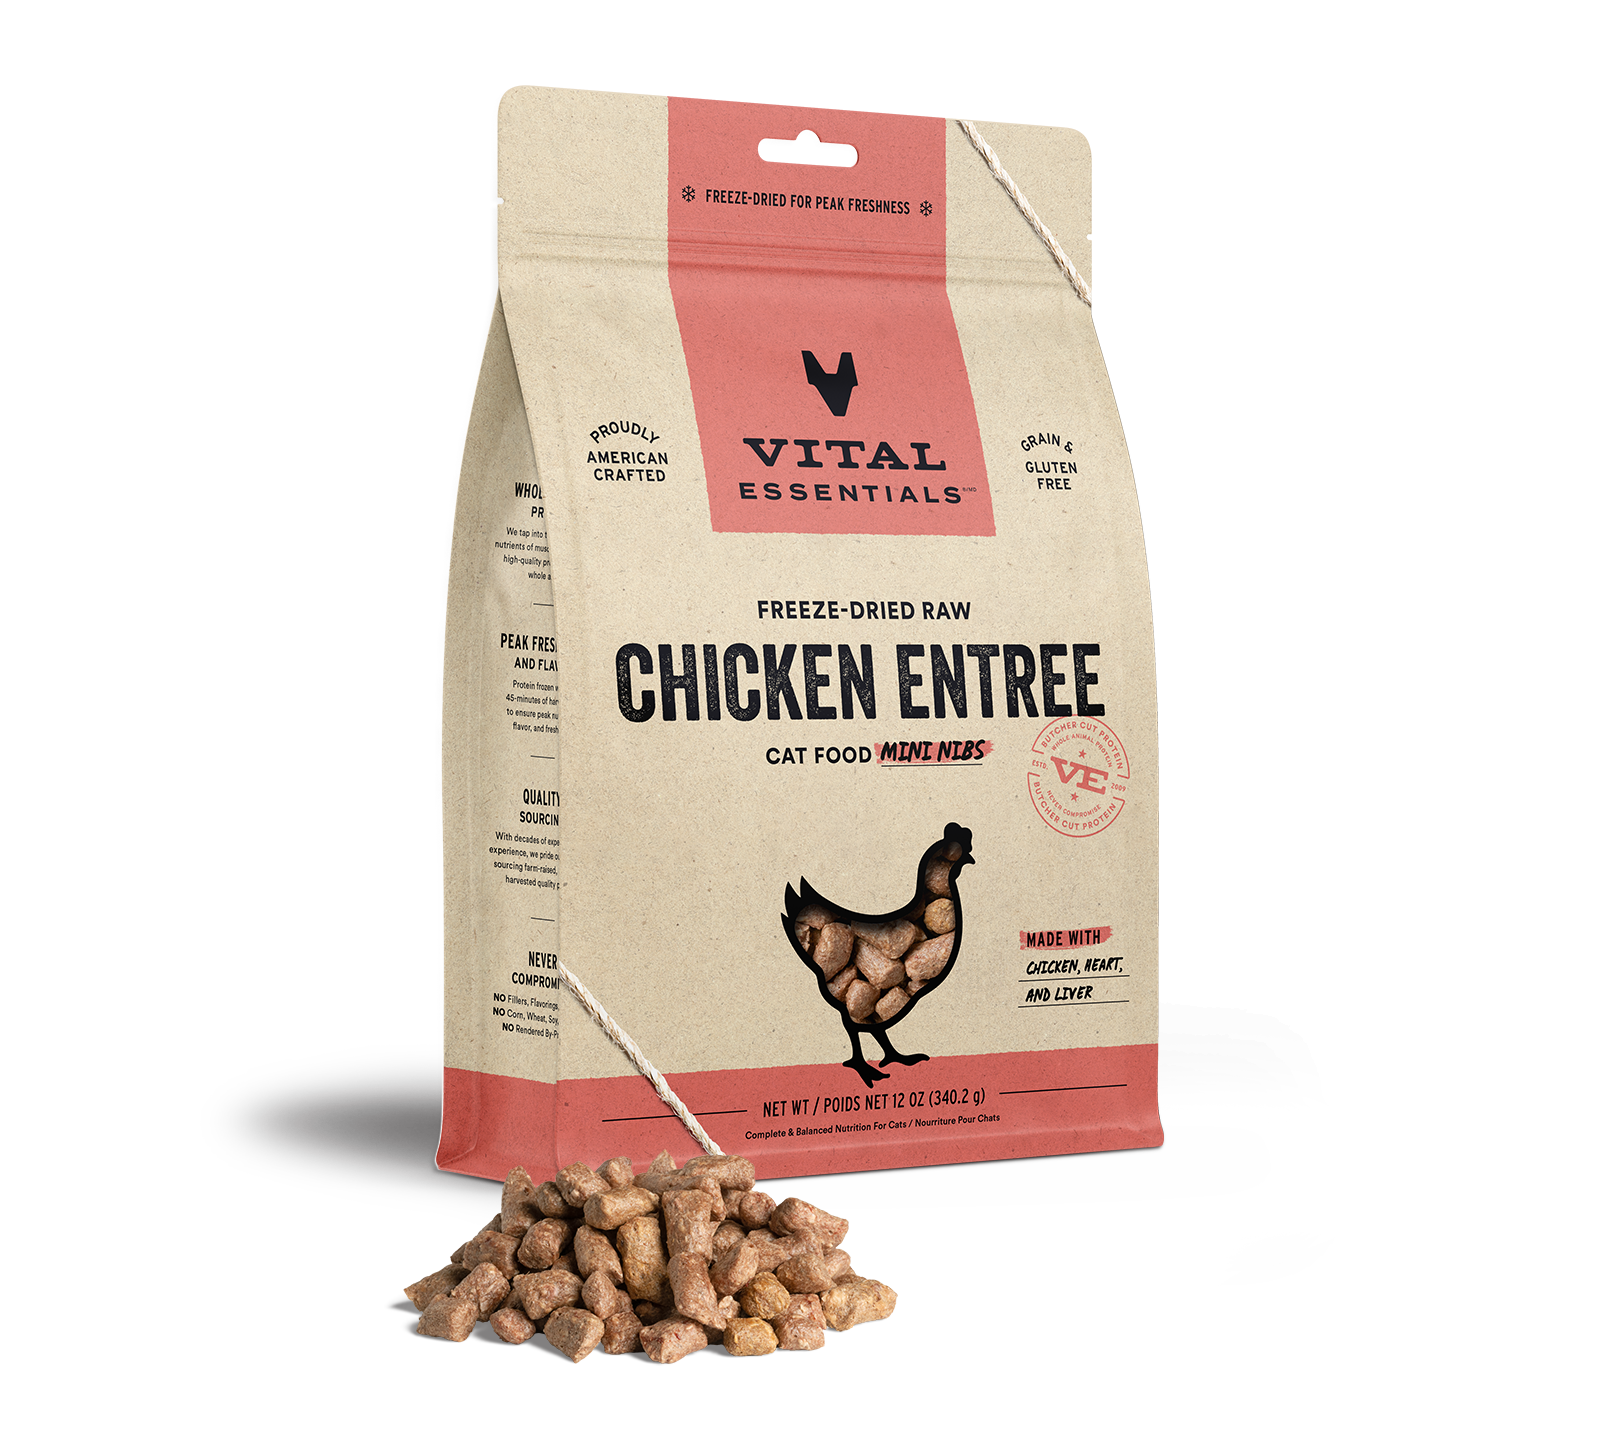 Vital Essentials Freeze-Dried Raw Chicken Entree Cat Food Mini Nibs, 12 oz - Food